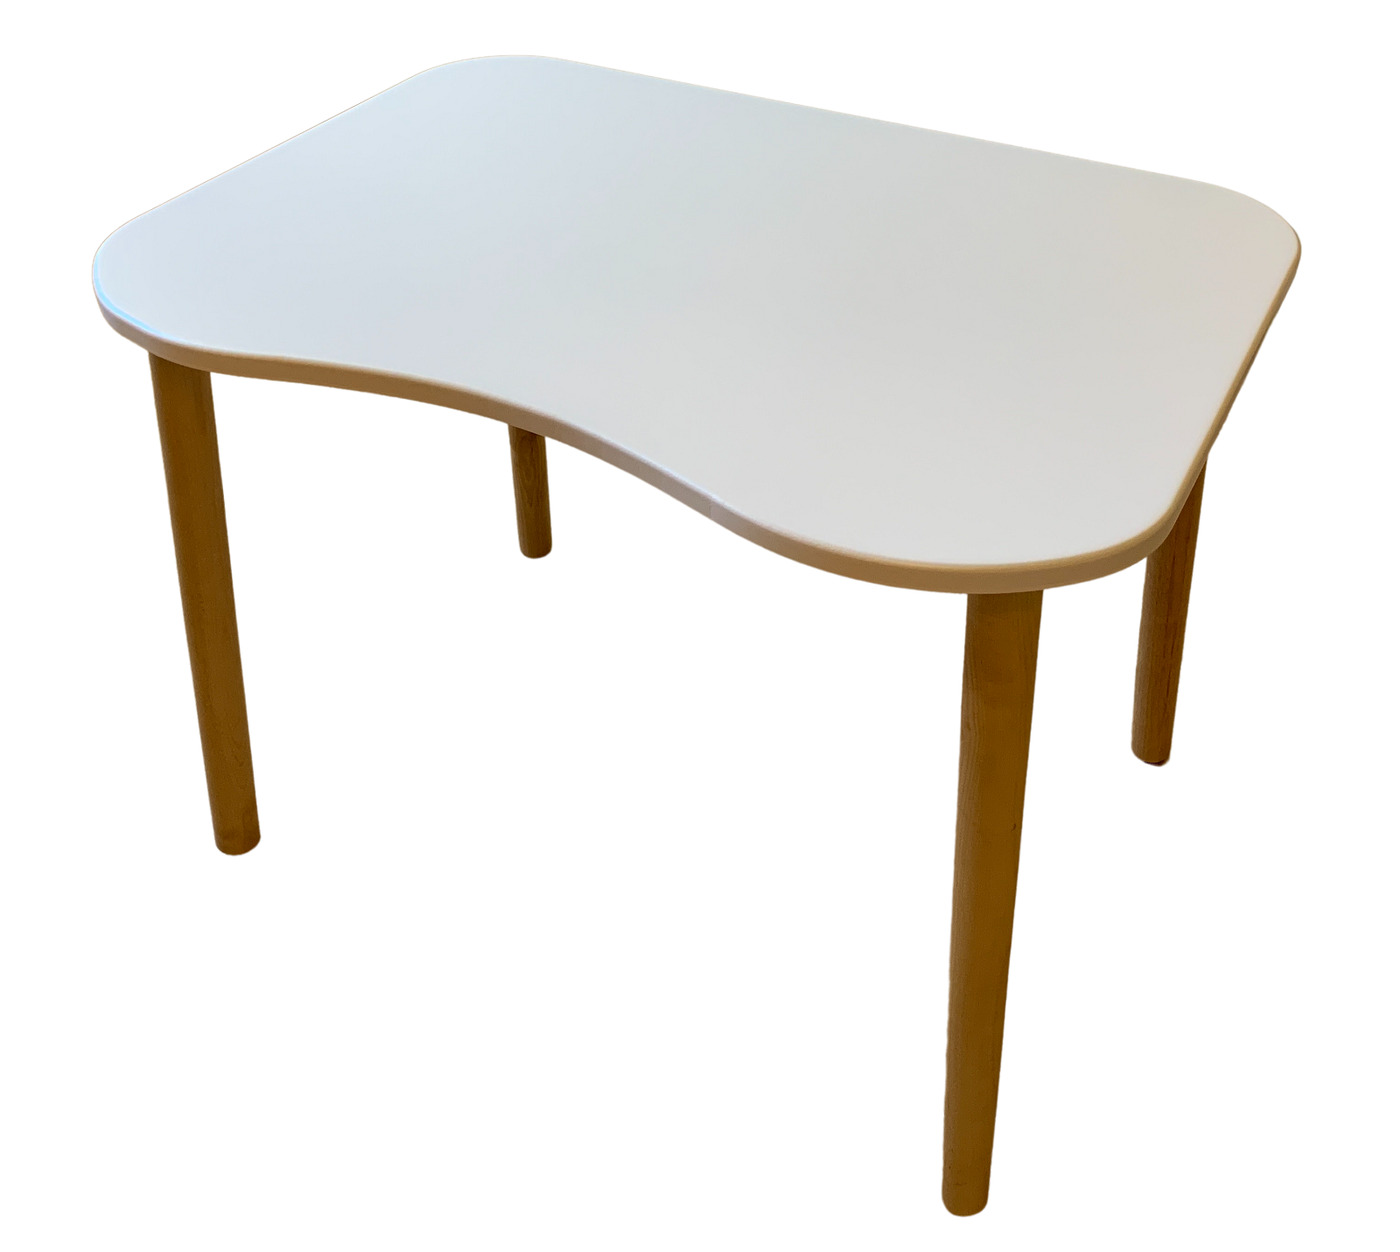 Прямоугольный стол с закругленными углами